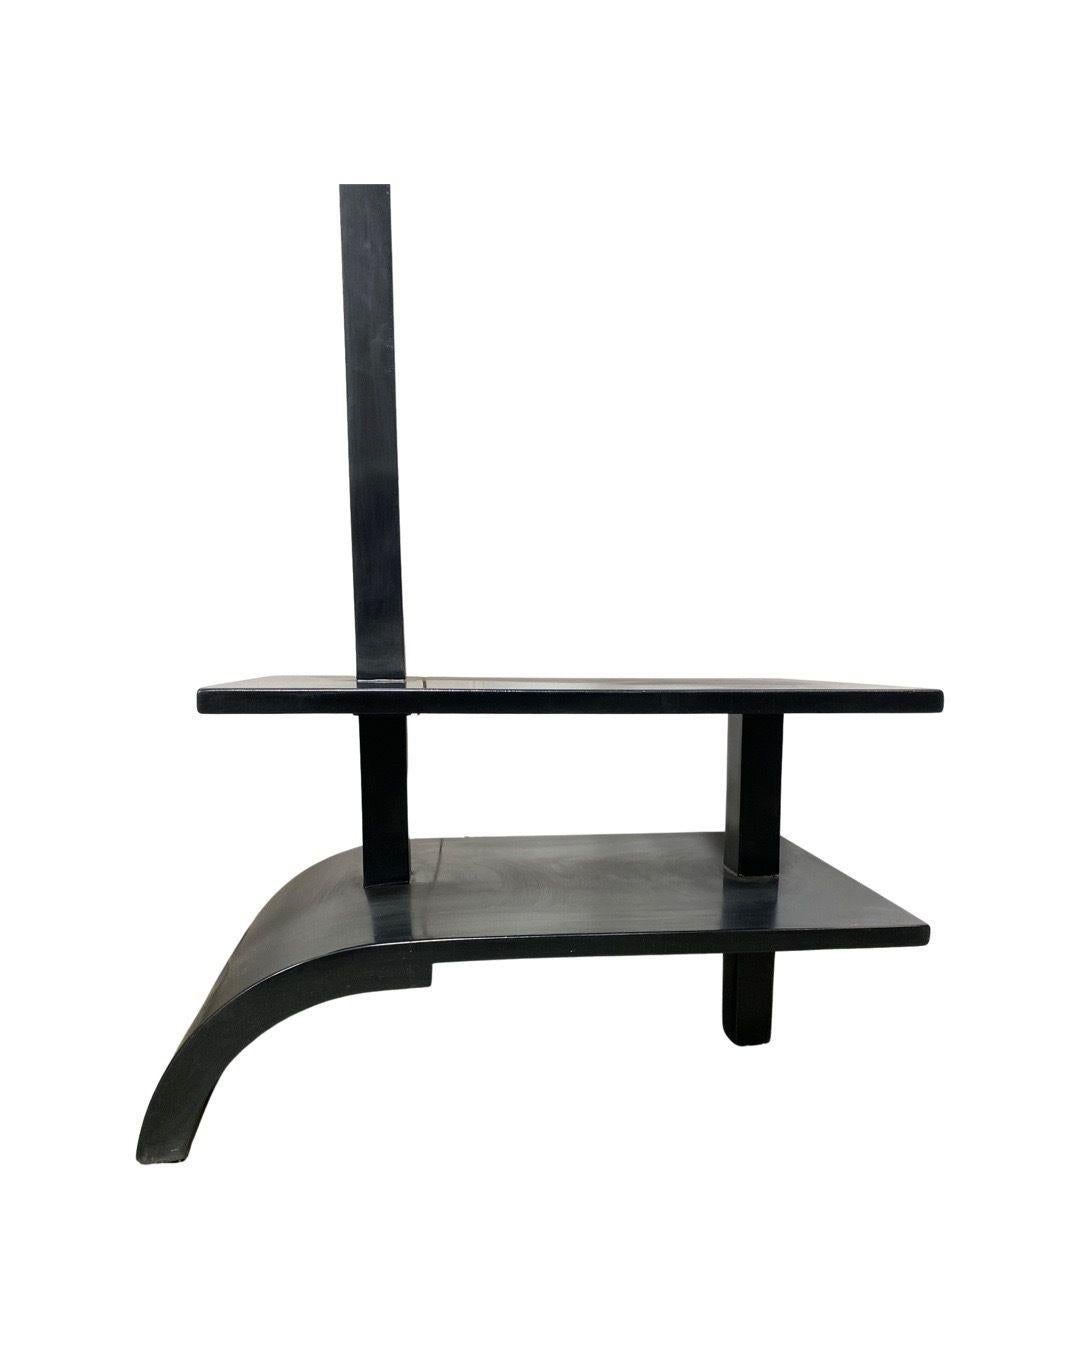 Un rare lampadaire original art déco en forme d'arc avec une table d'appoint en bois laqué noir comme base. Fabriqué en France.
Dimensions de la table : H16